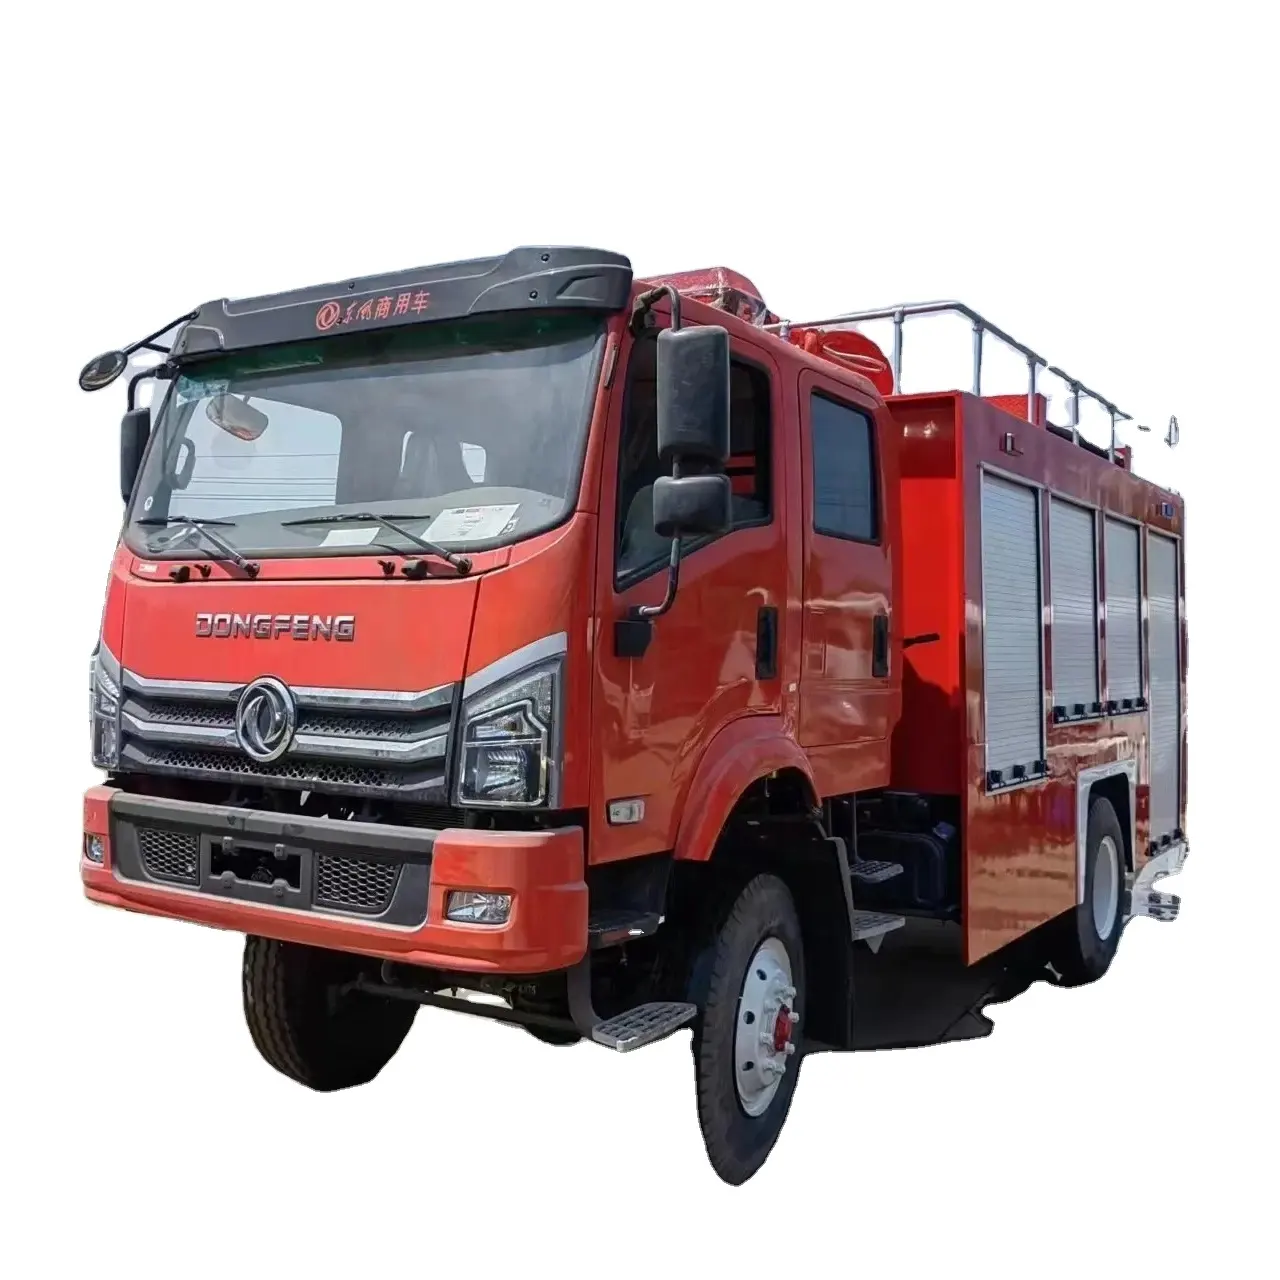 डोंगफेंग फायर इंजन ट्रक इसका मुख्य रूप से अग्निशमन संचालन और आपातकालीन बचाव मिशन के लिए किया जाता है।